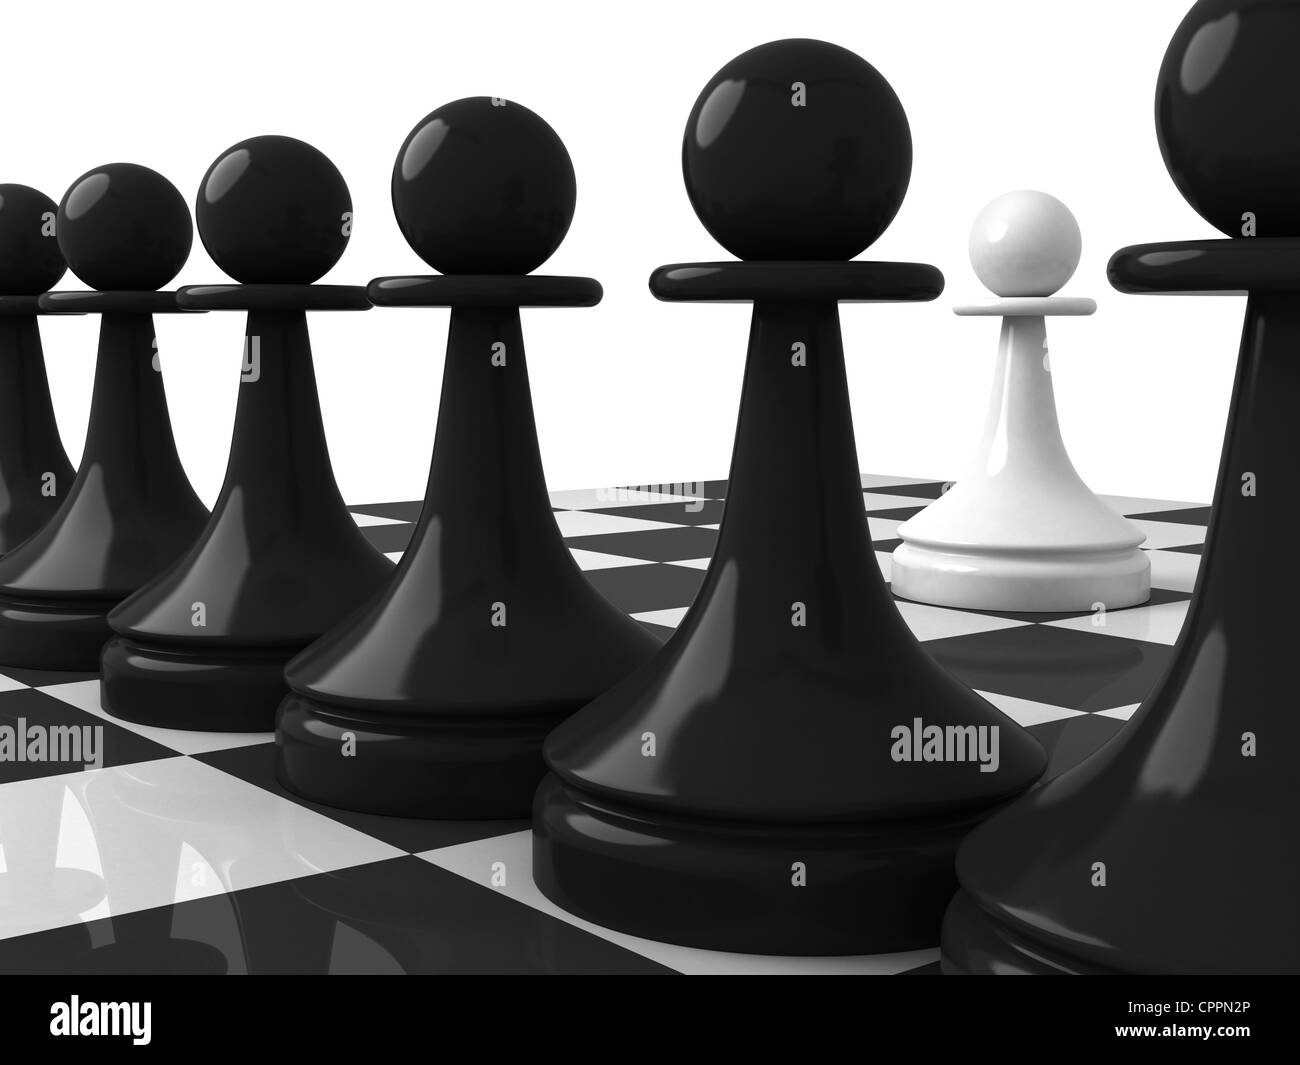 Forma classica a scacchi pezzi: una pedina bianca nera opposta pedine di una scacchiera. 3D render illustrazione, isolato su bianco Foto Stock